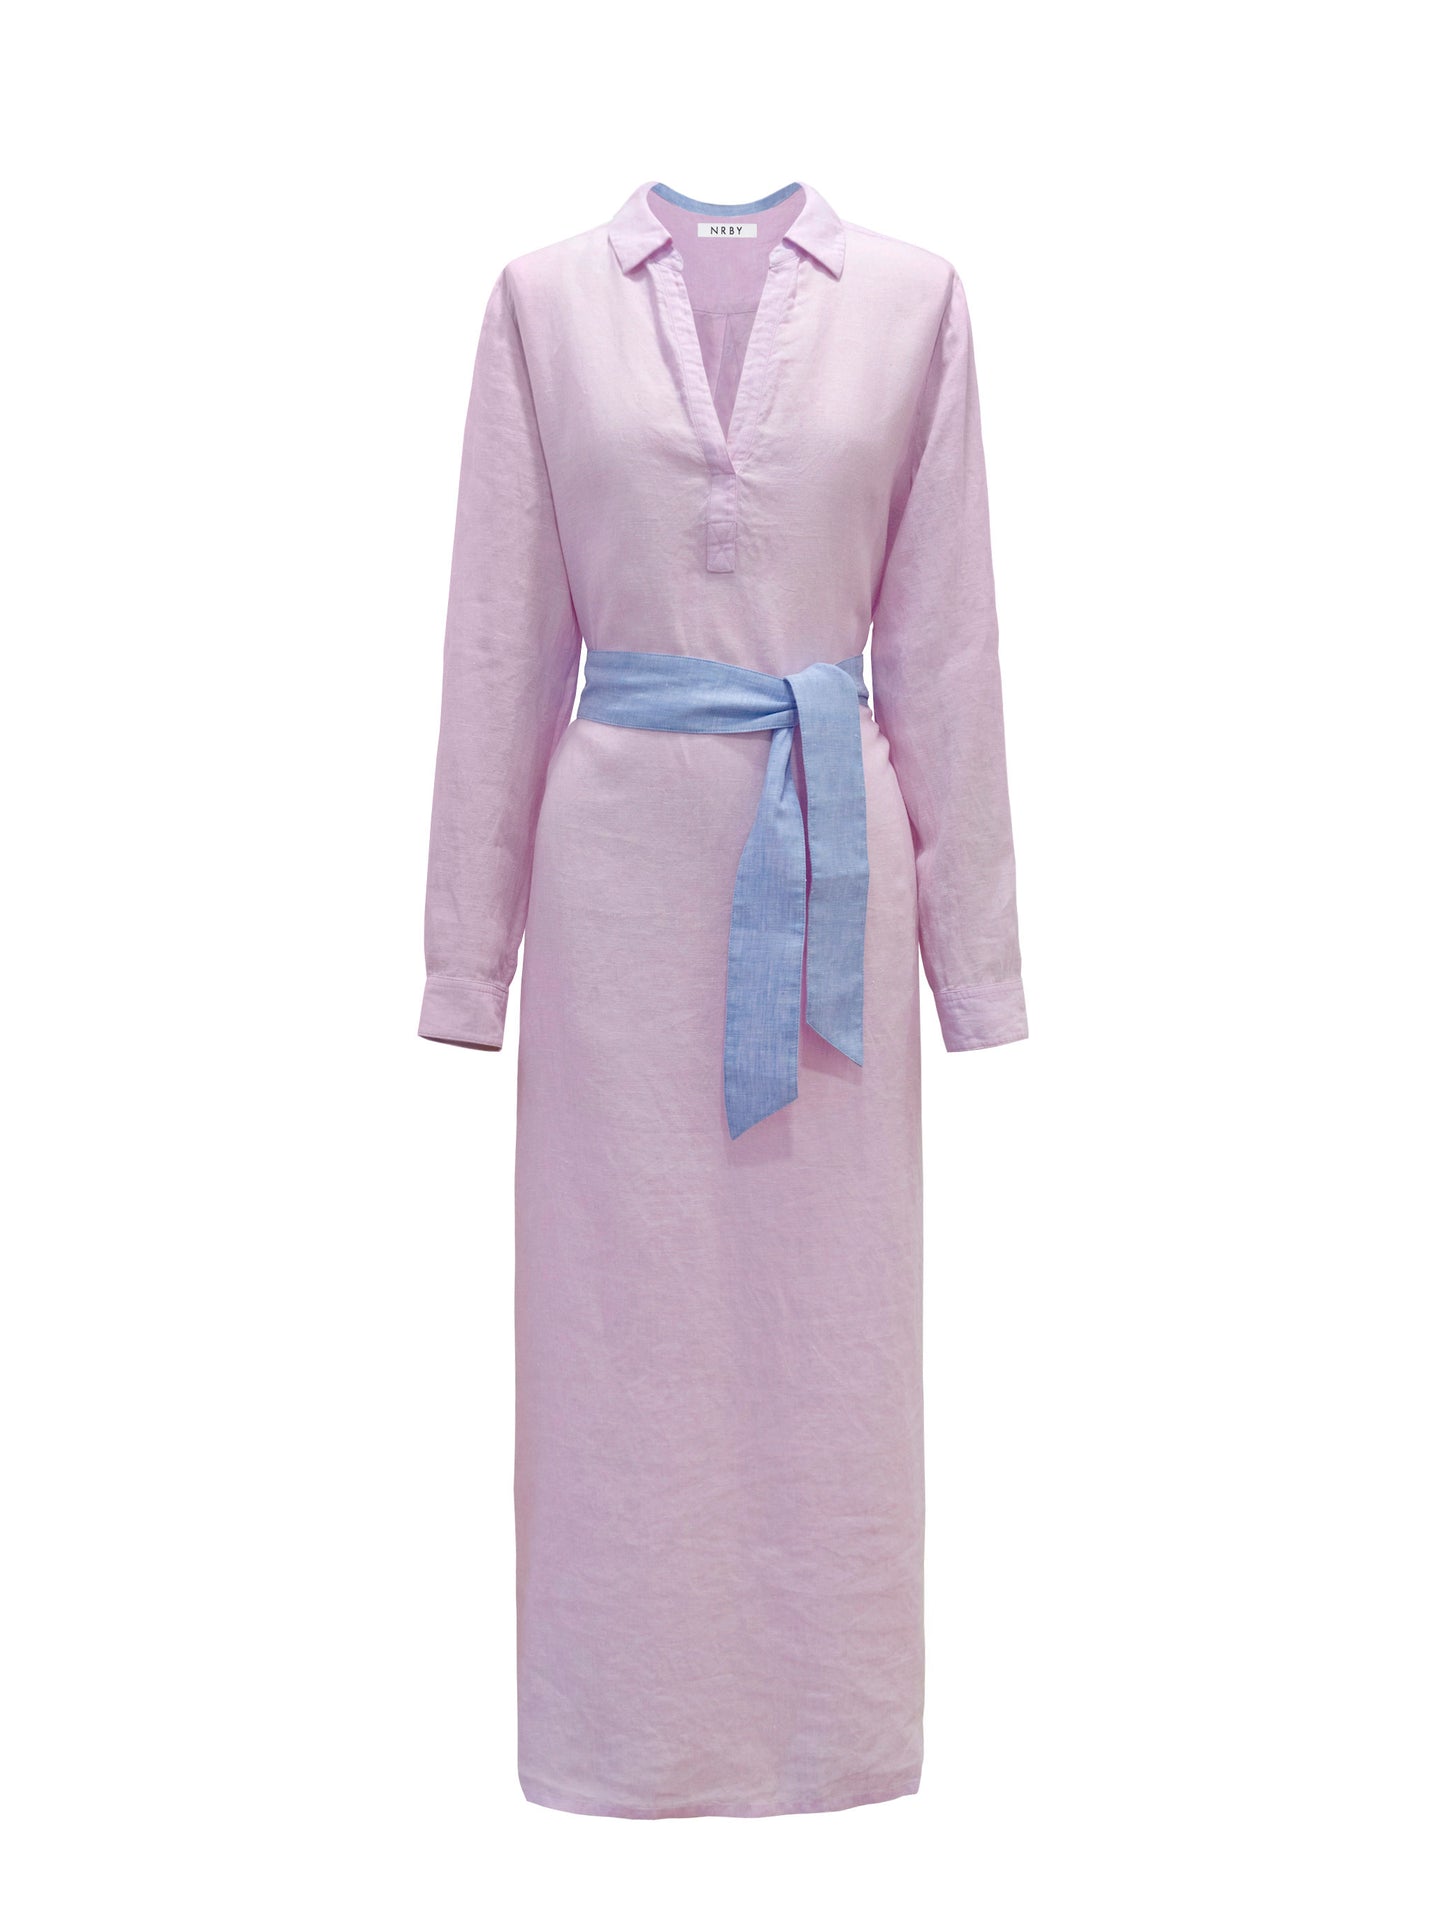 Chrissie linen maxi dress - Pink Sorbet